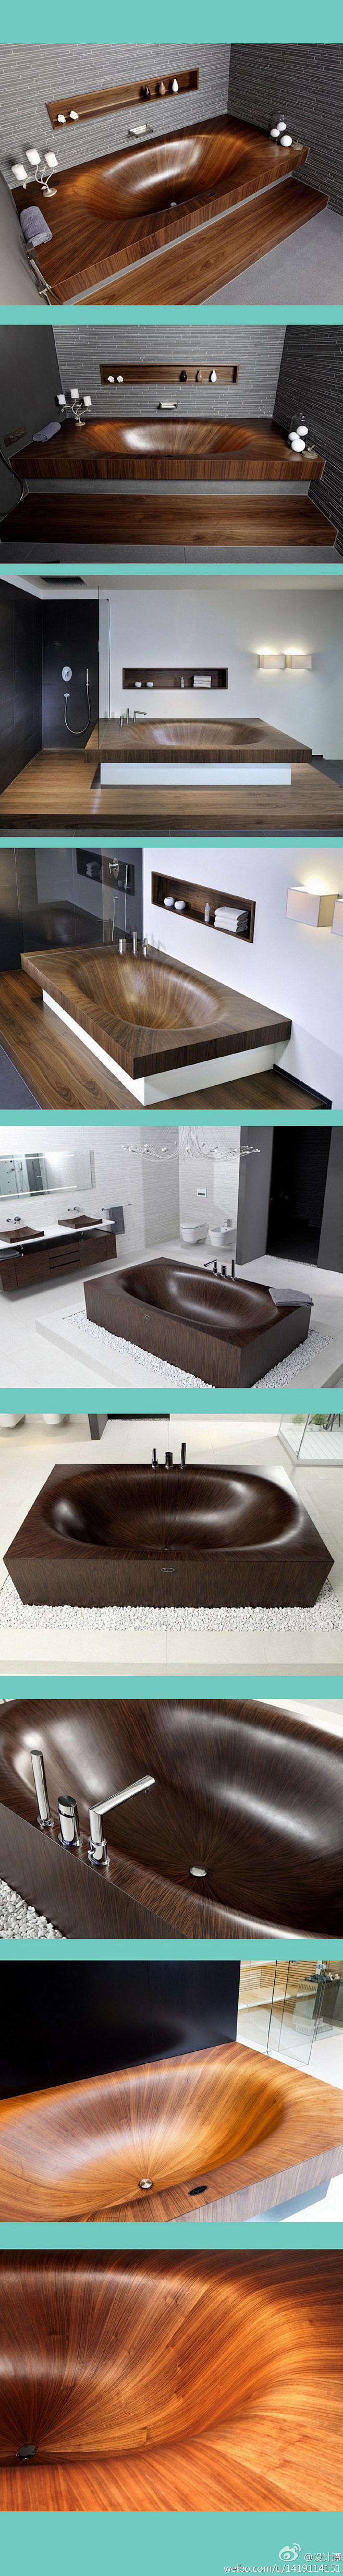 光滑的性感的： 木质浴缸。意大利。设计A